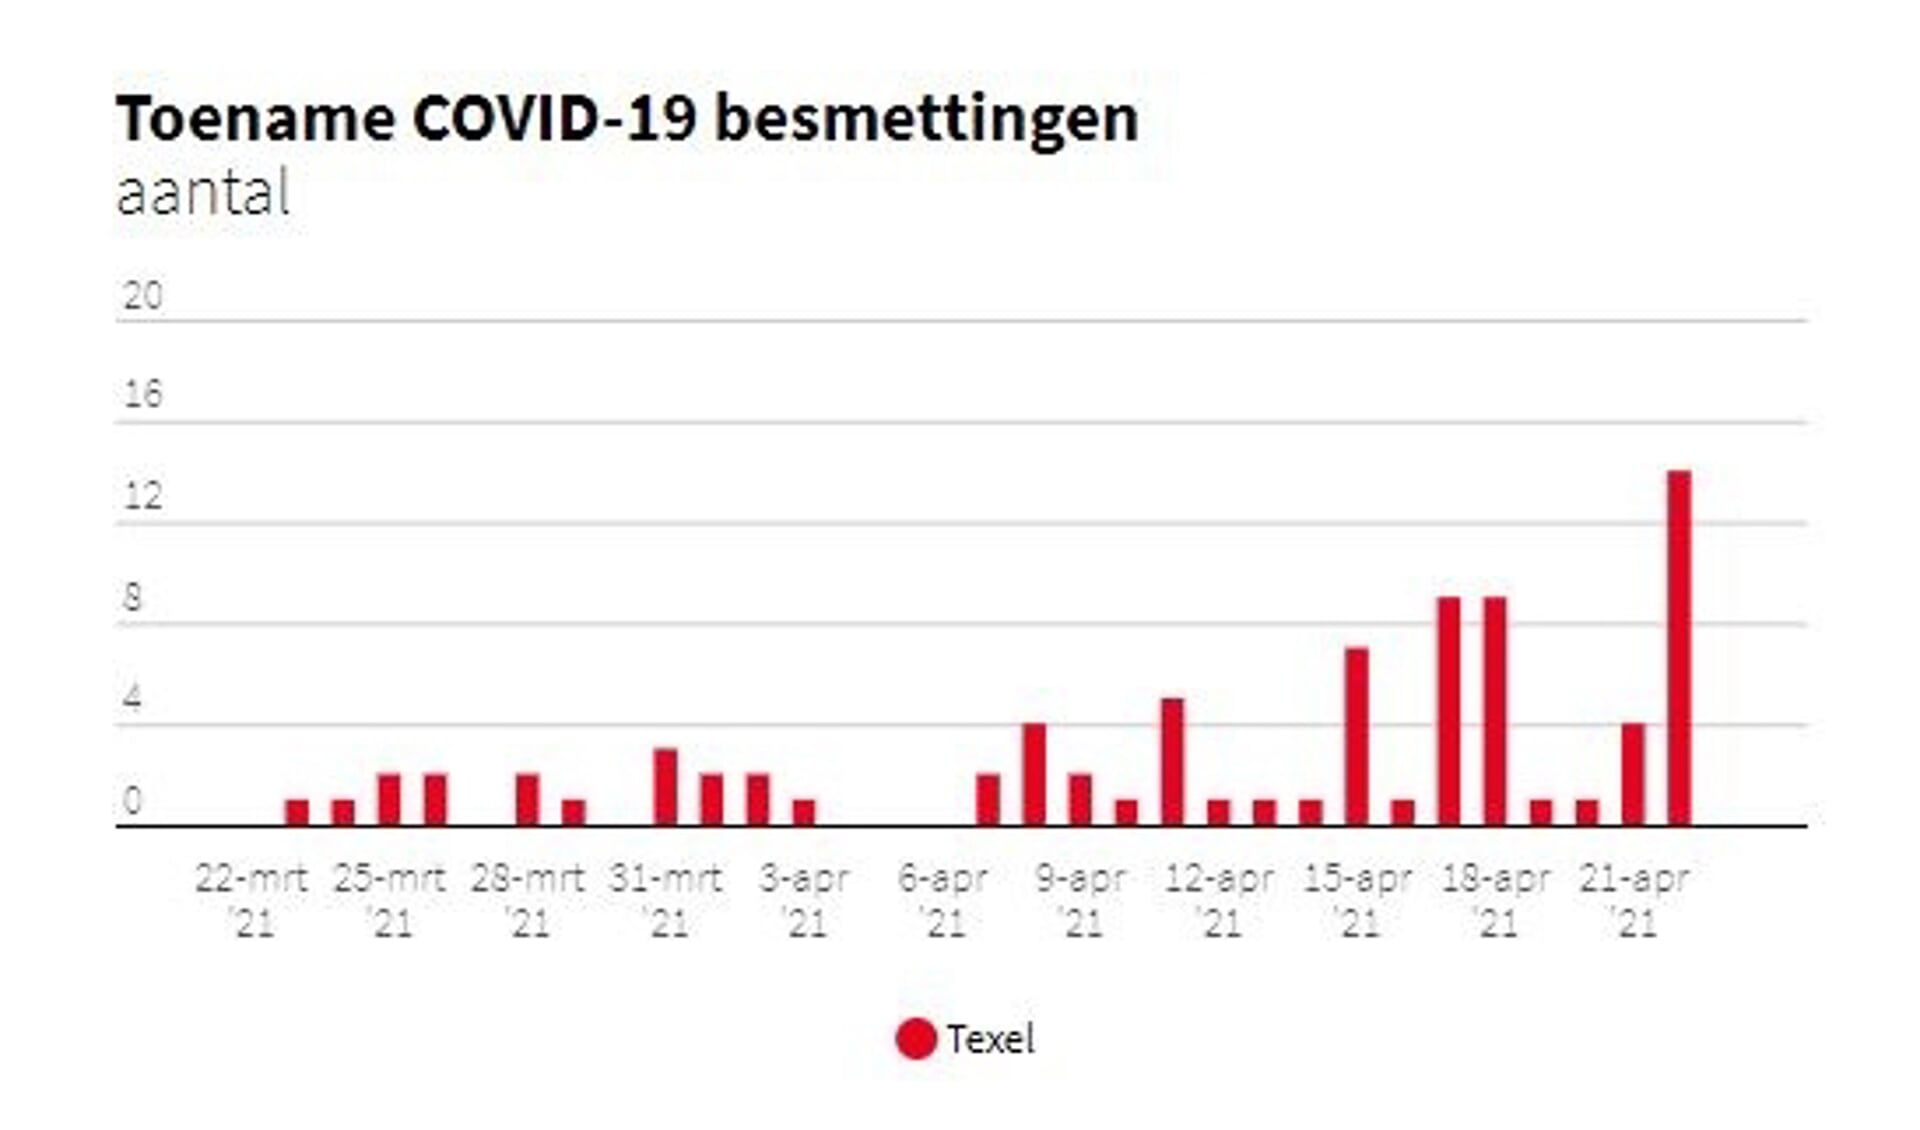 Het aantal besmettingen op Texel in de afgelopen weken.